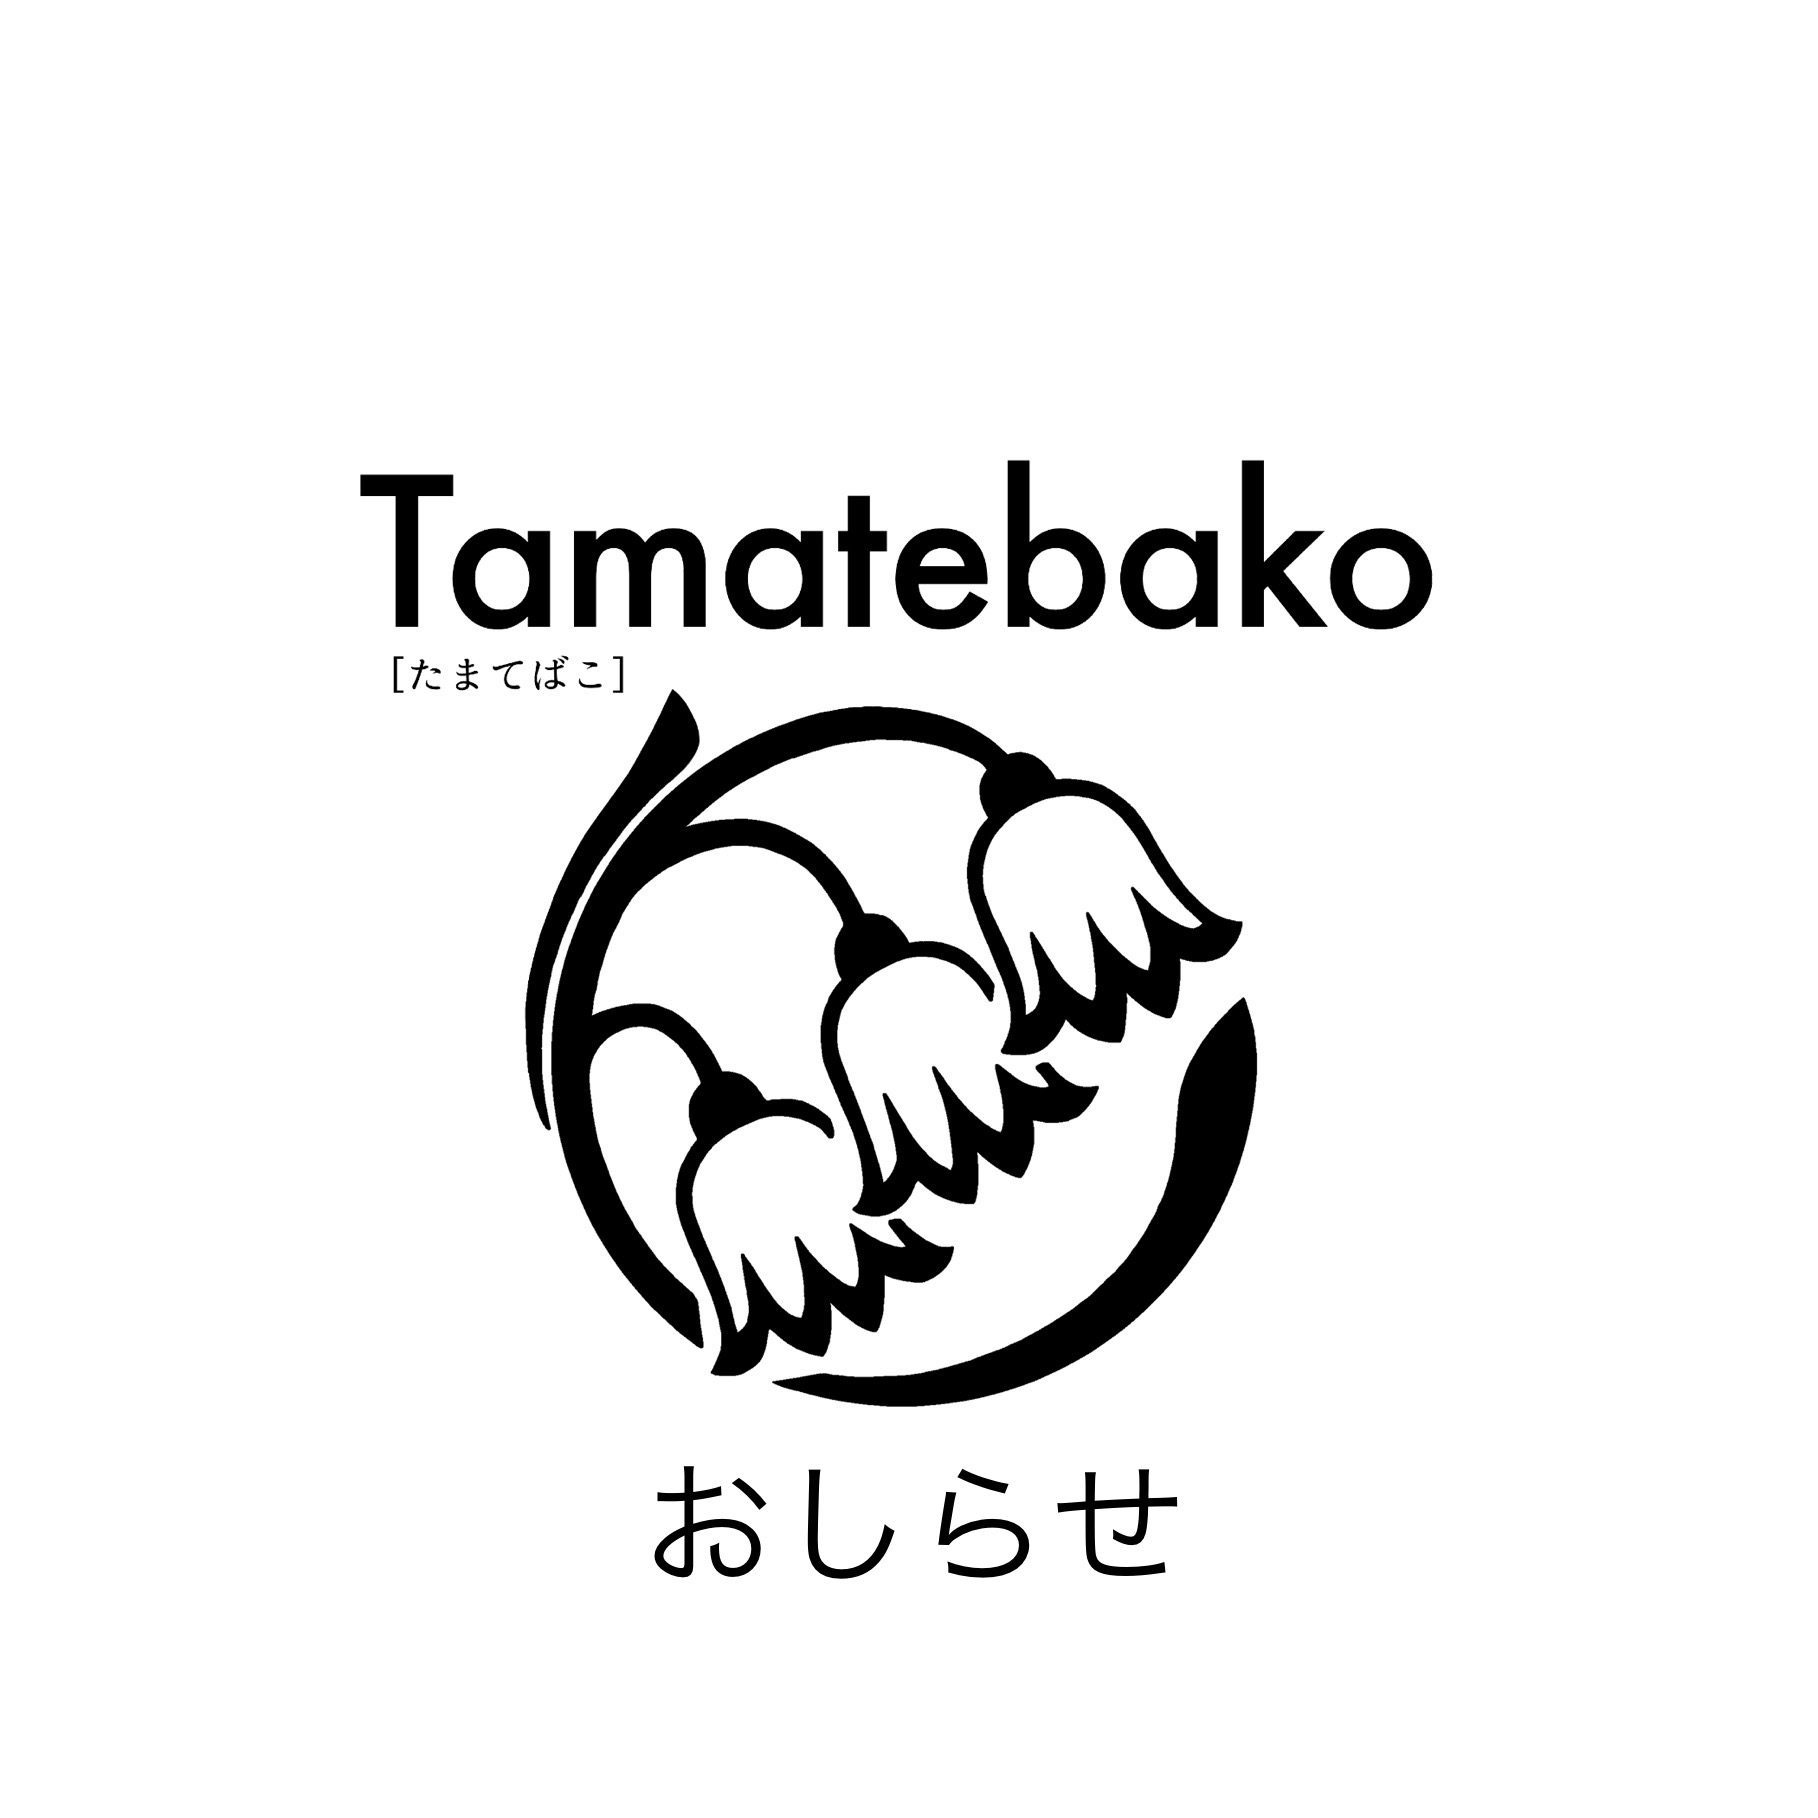 Tamatebakoお知らせ